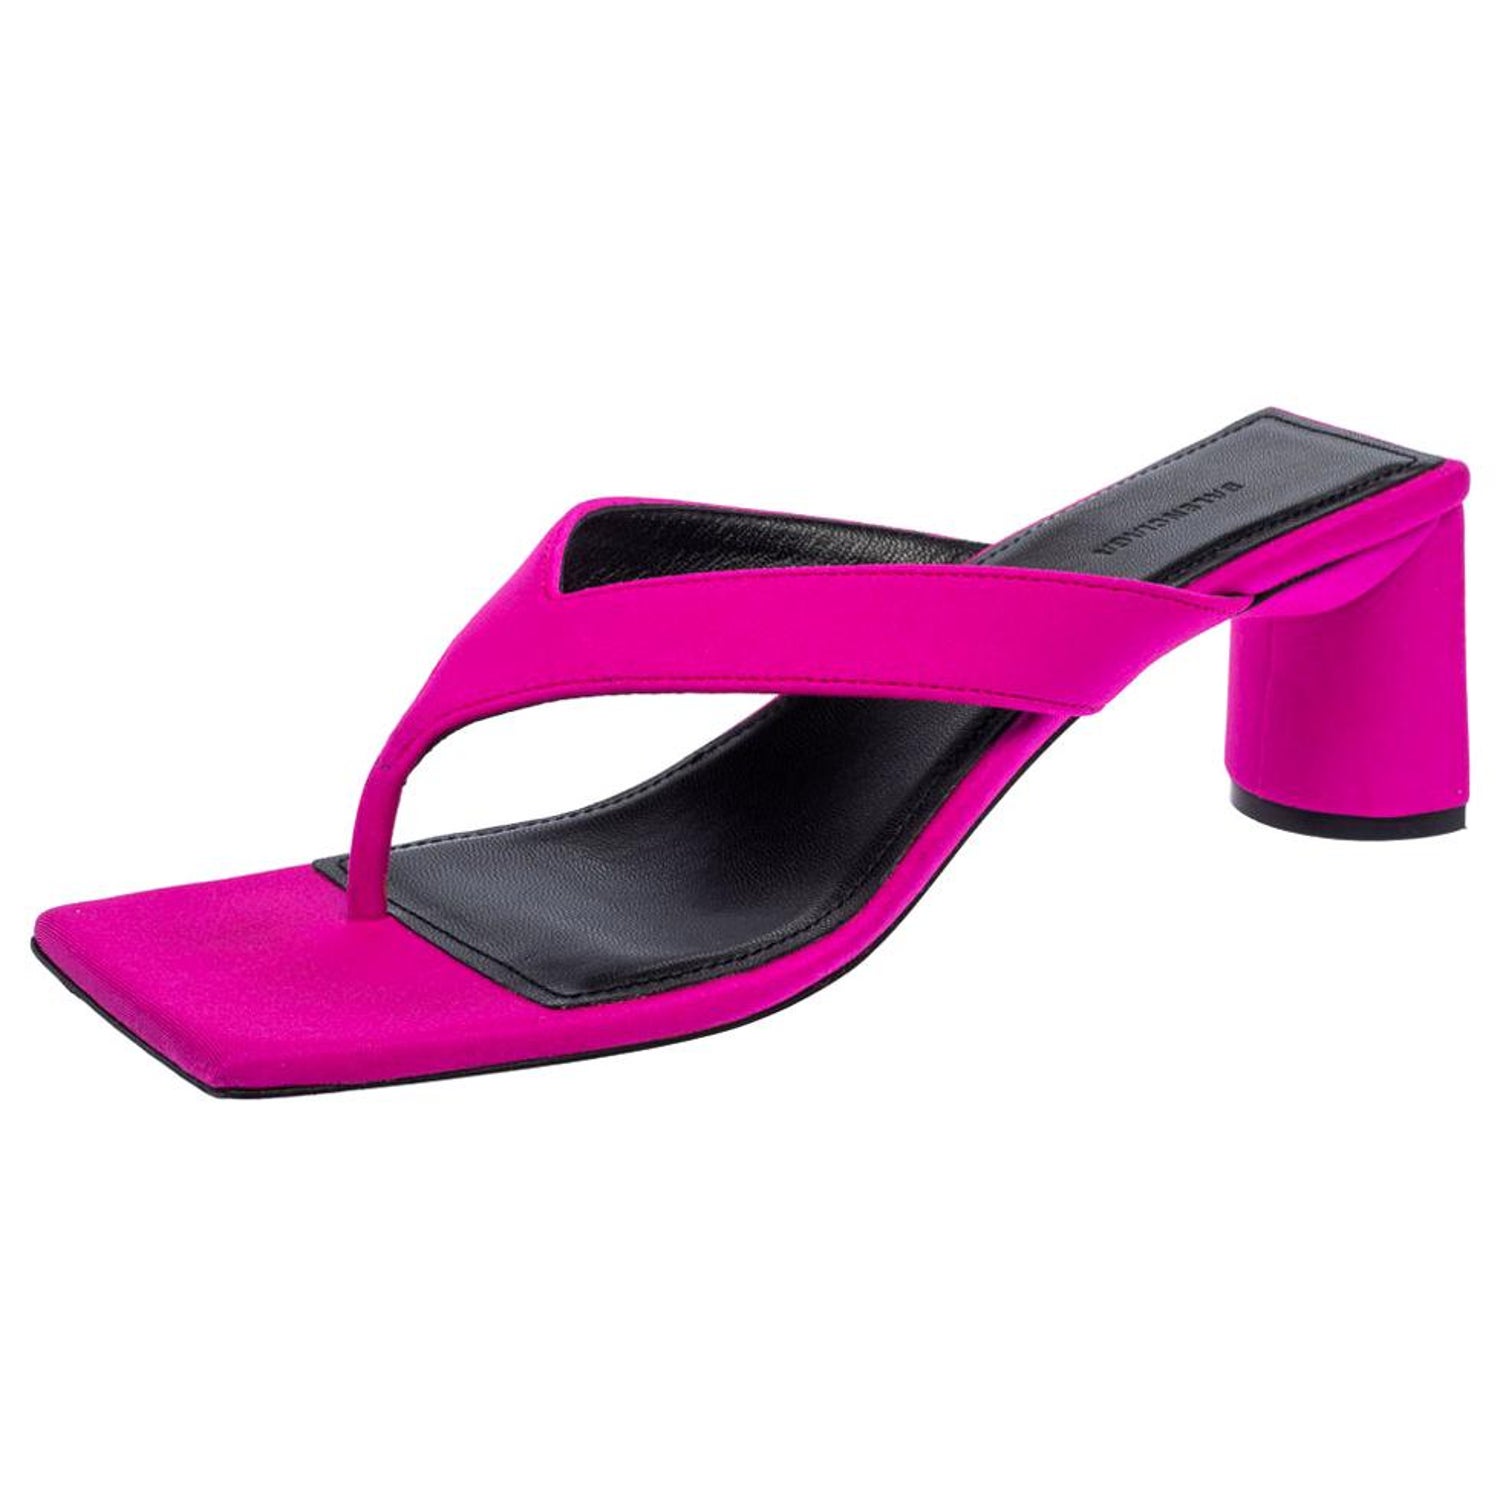 Balenciaga Square Toe - 3 For Sale on 1stDibs | balenciaga square toe  sandals, balenciaga square toe heels, balenciaga square toe leather mules